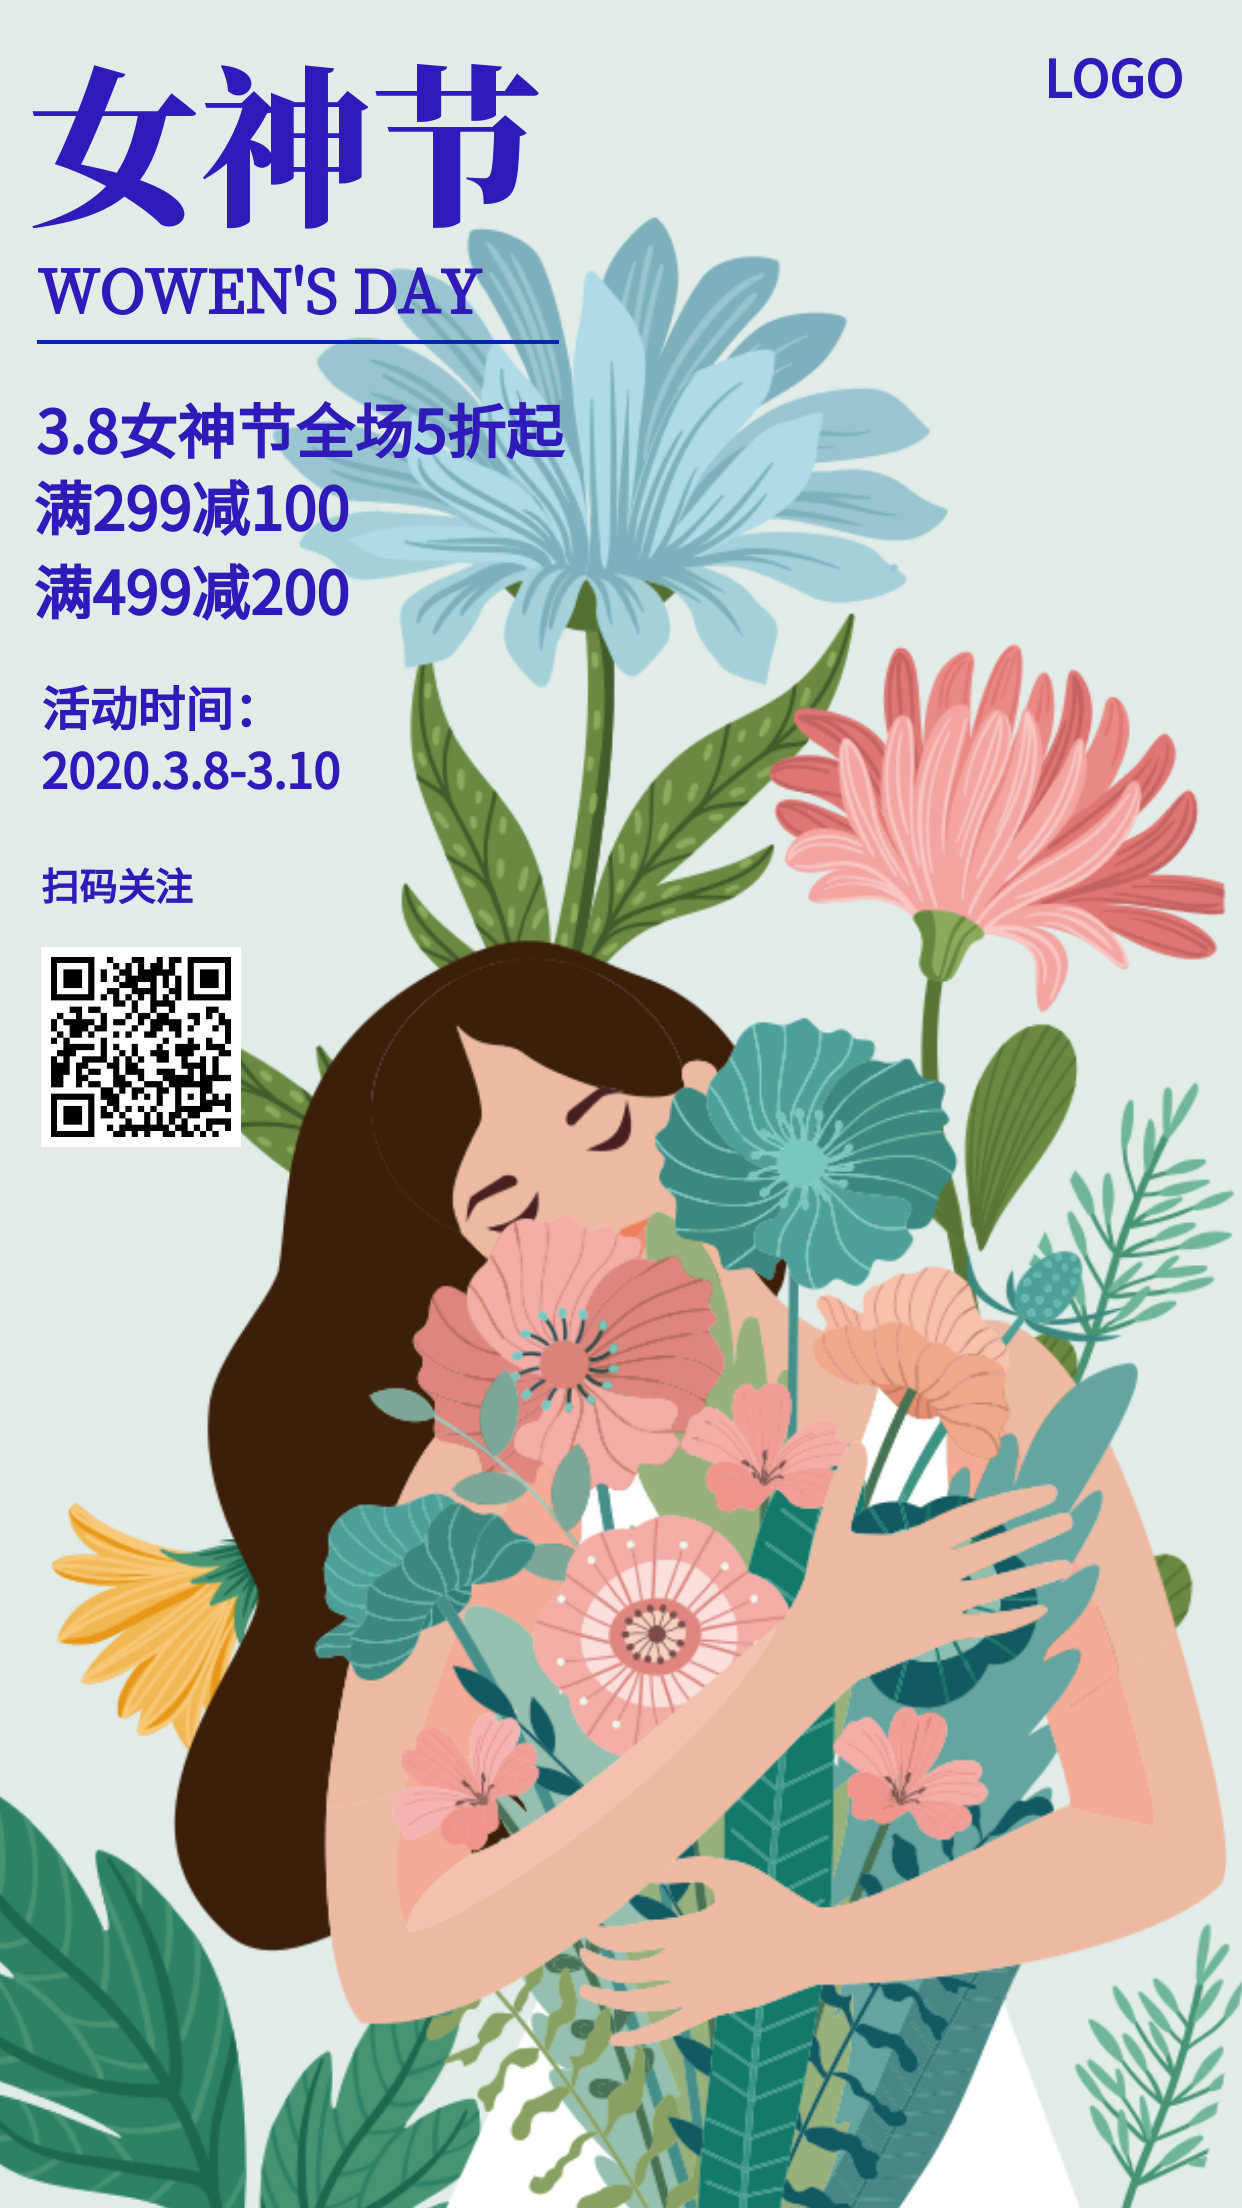 唯美插画风38女神节促销活动手机海报